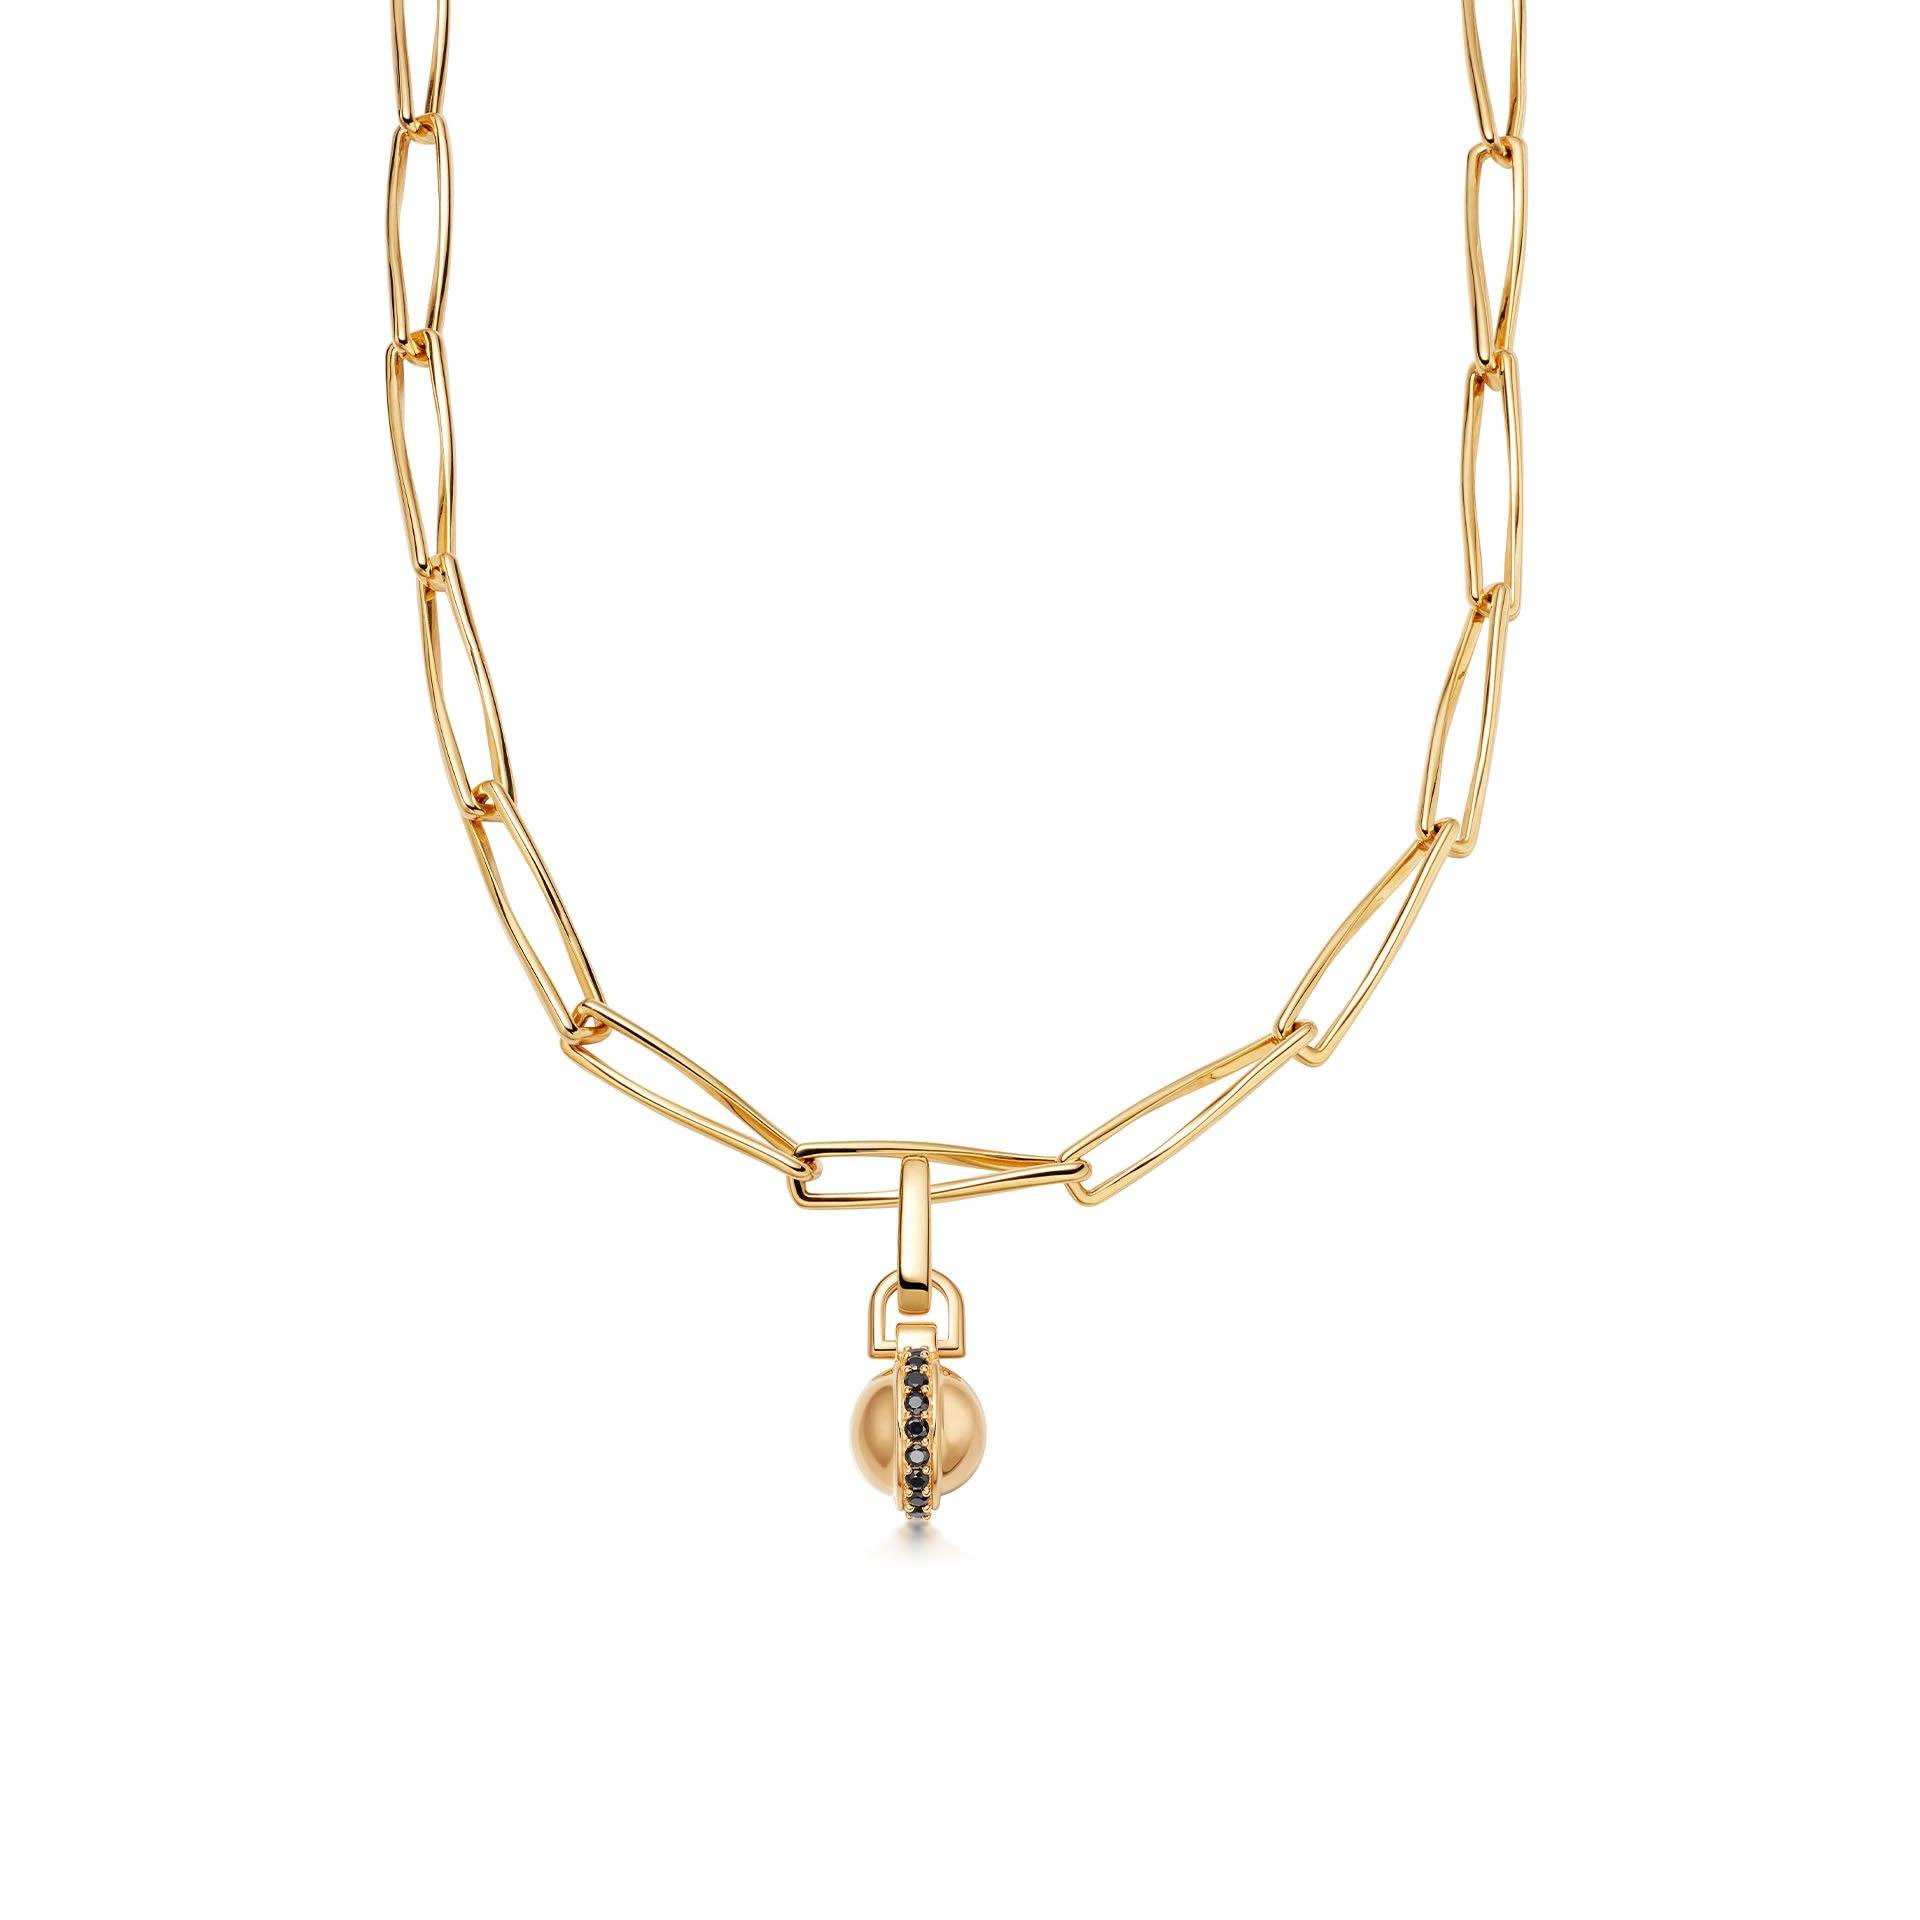 Atacado joias OEM / ODM oferecem suas idéias e designs corrente pendente de joias banhada a ouro 18 quilates em latão